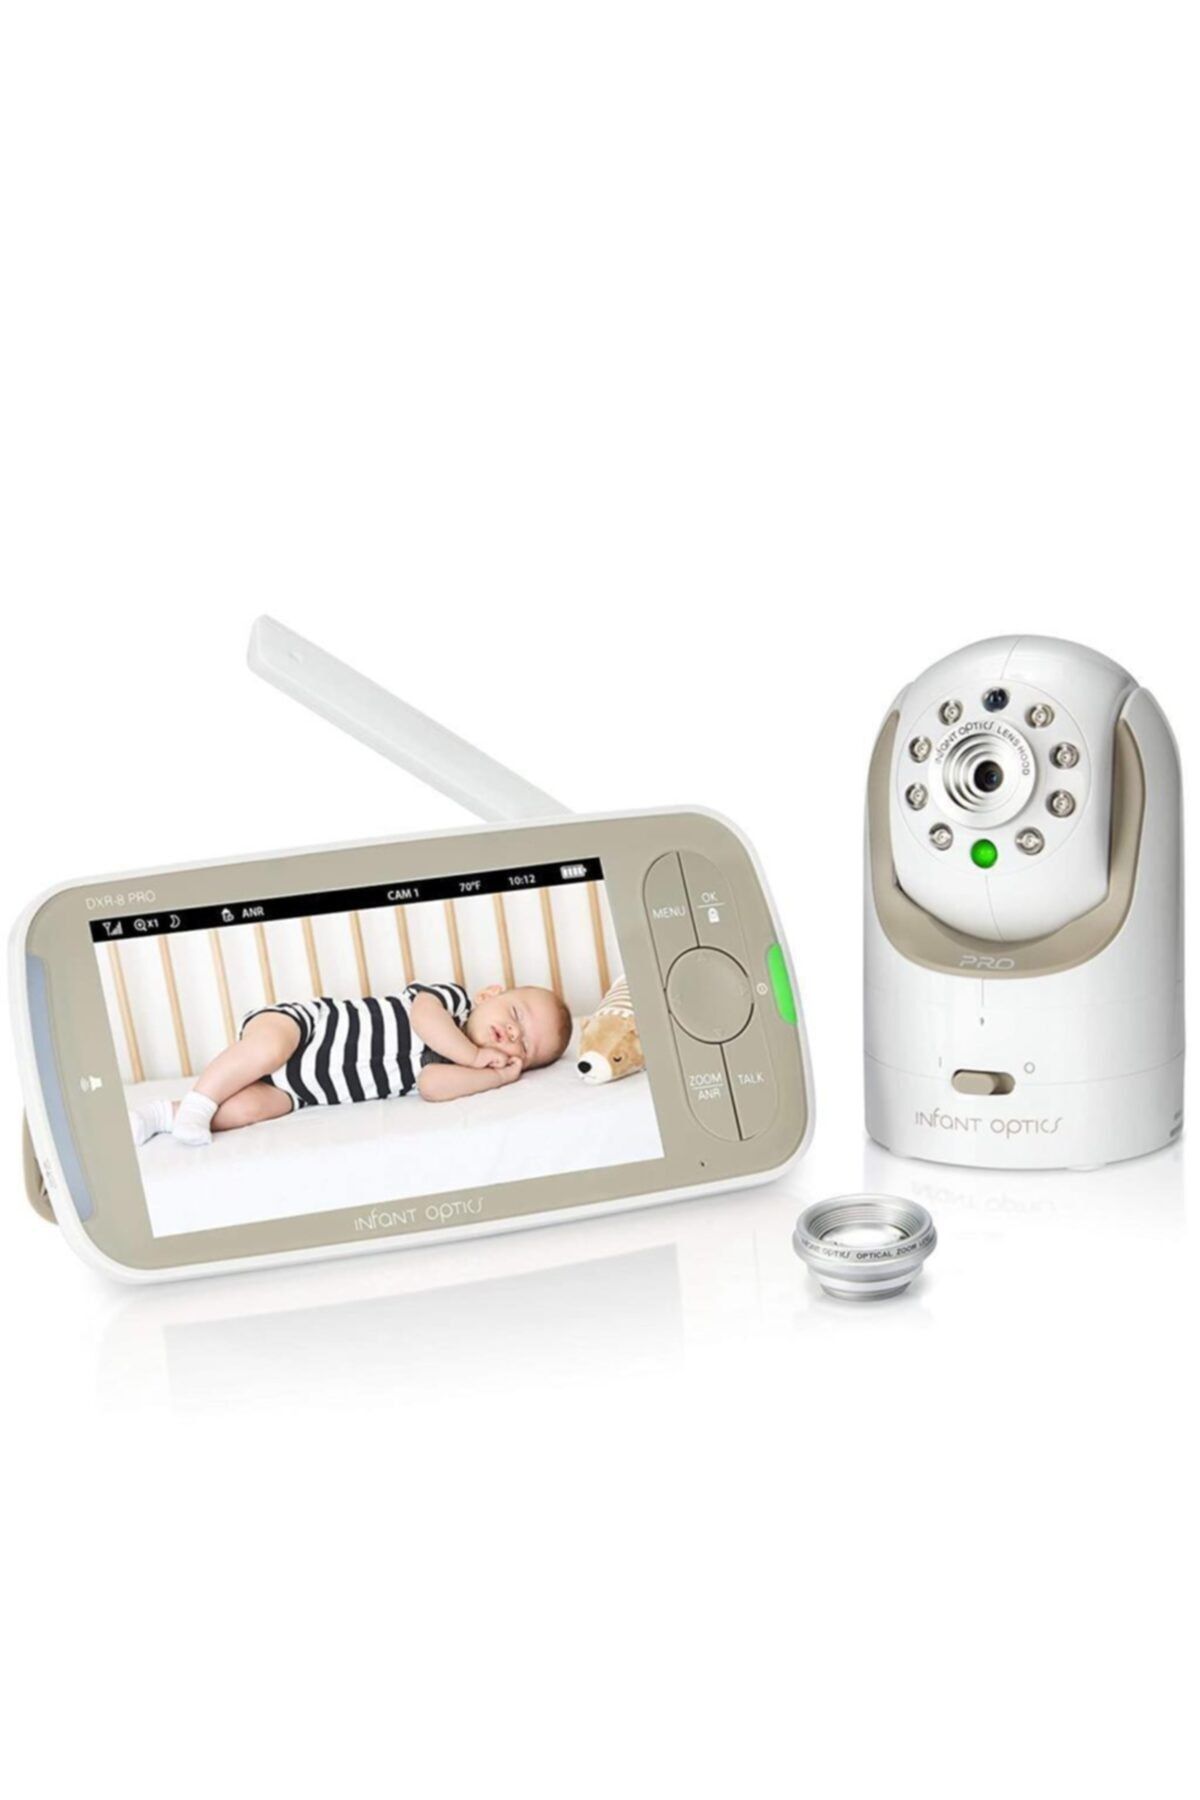 Infant Optics Dxr-8 Pro Bebek Monitörü